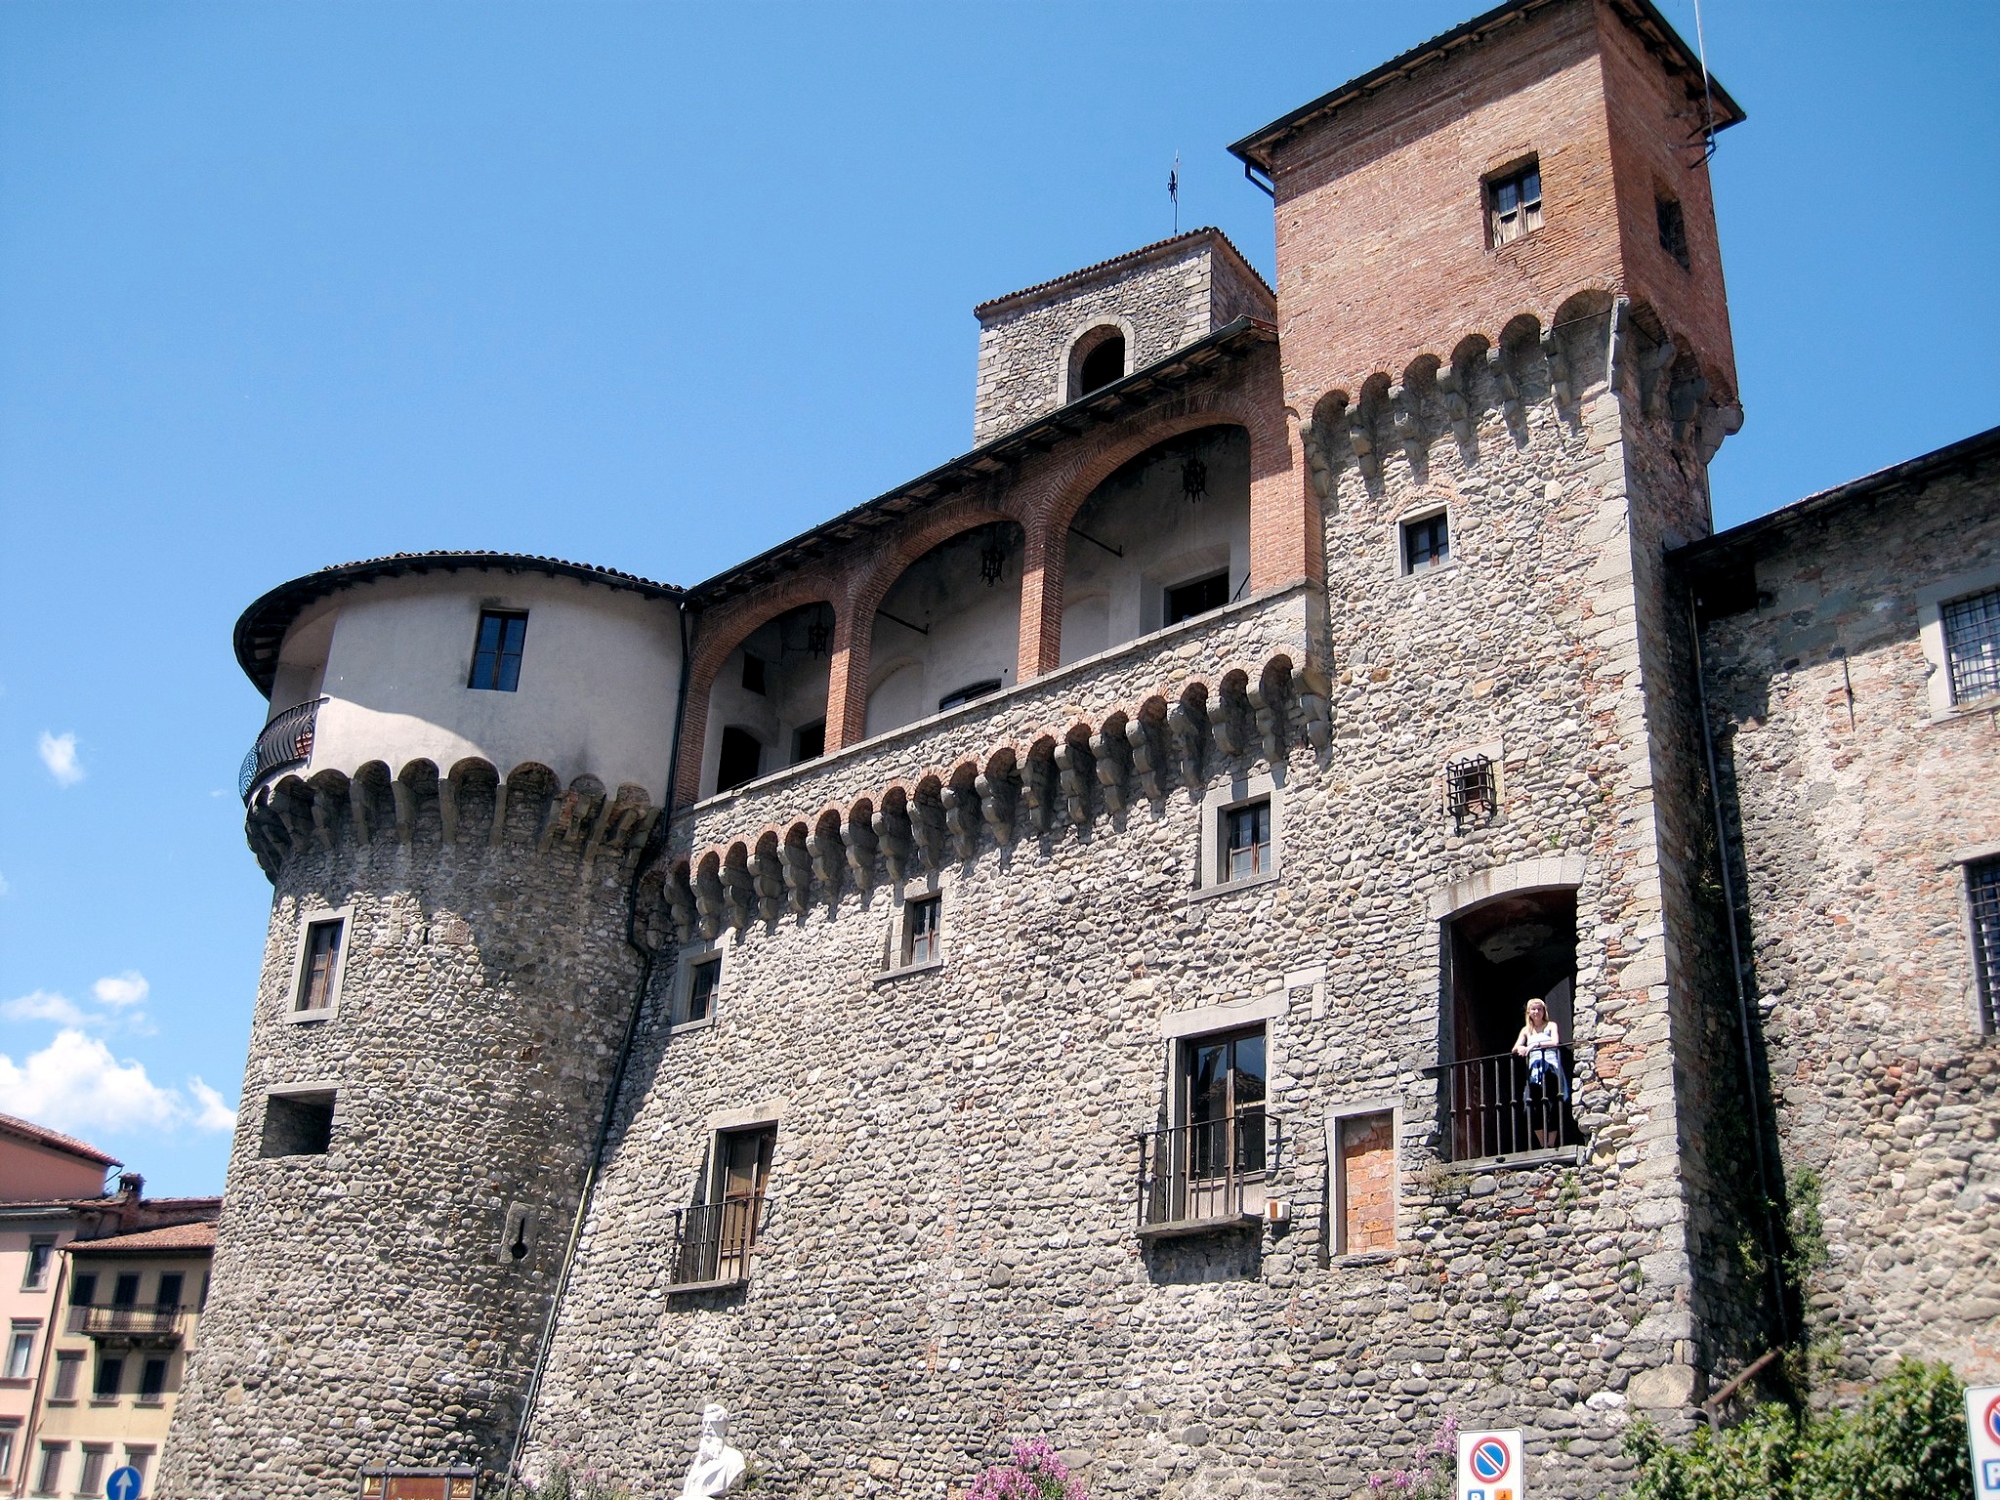 The Rocca Ariostesca in Castelnuovo di Garfagnana